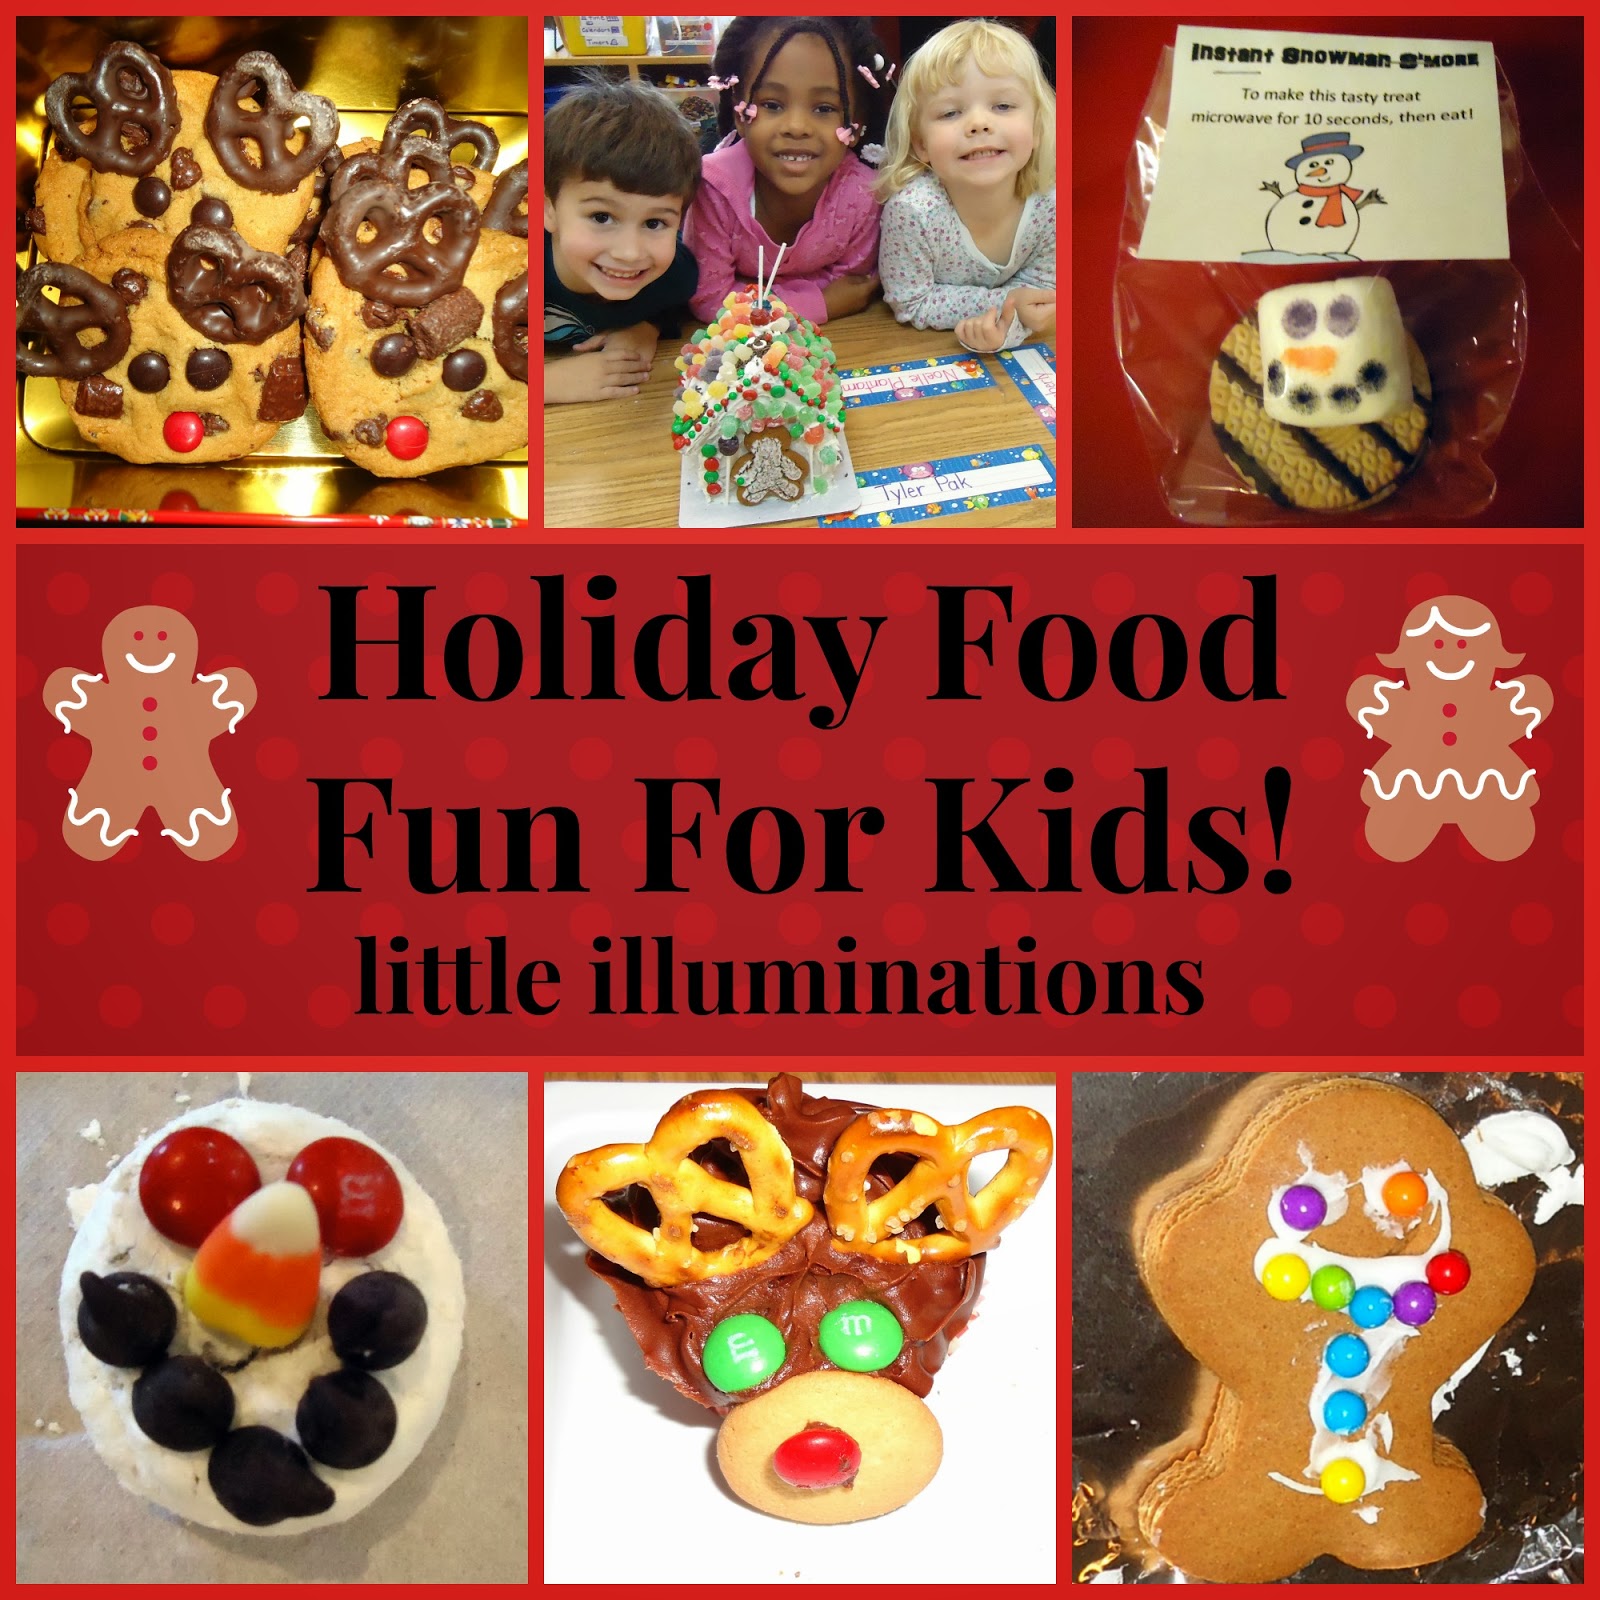 http://3.bp.blogspot.com/-KElwUGhYDW4/UqKdpxrmY1I/AAAAAAAAJlo/kW1pwWkn4io/s1600/Holiday+Food+Fun+header+title.jpg